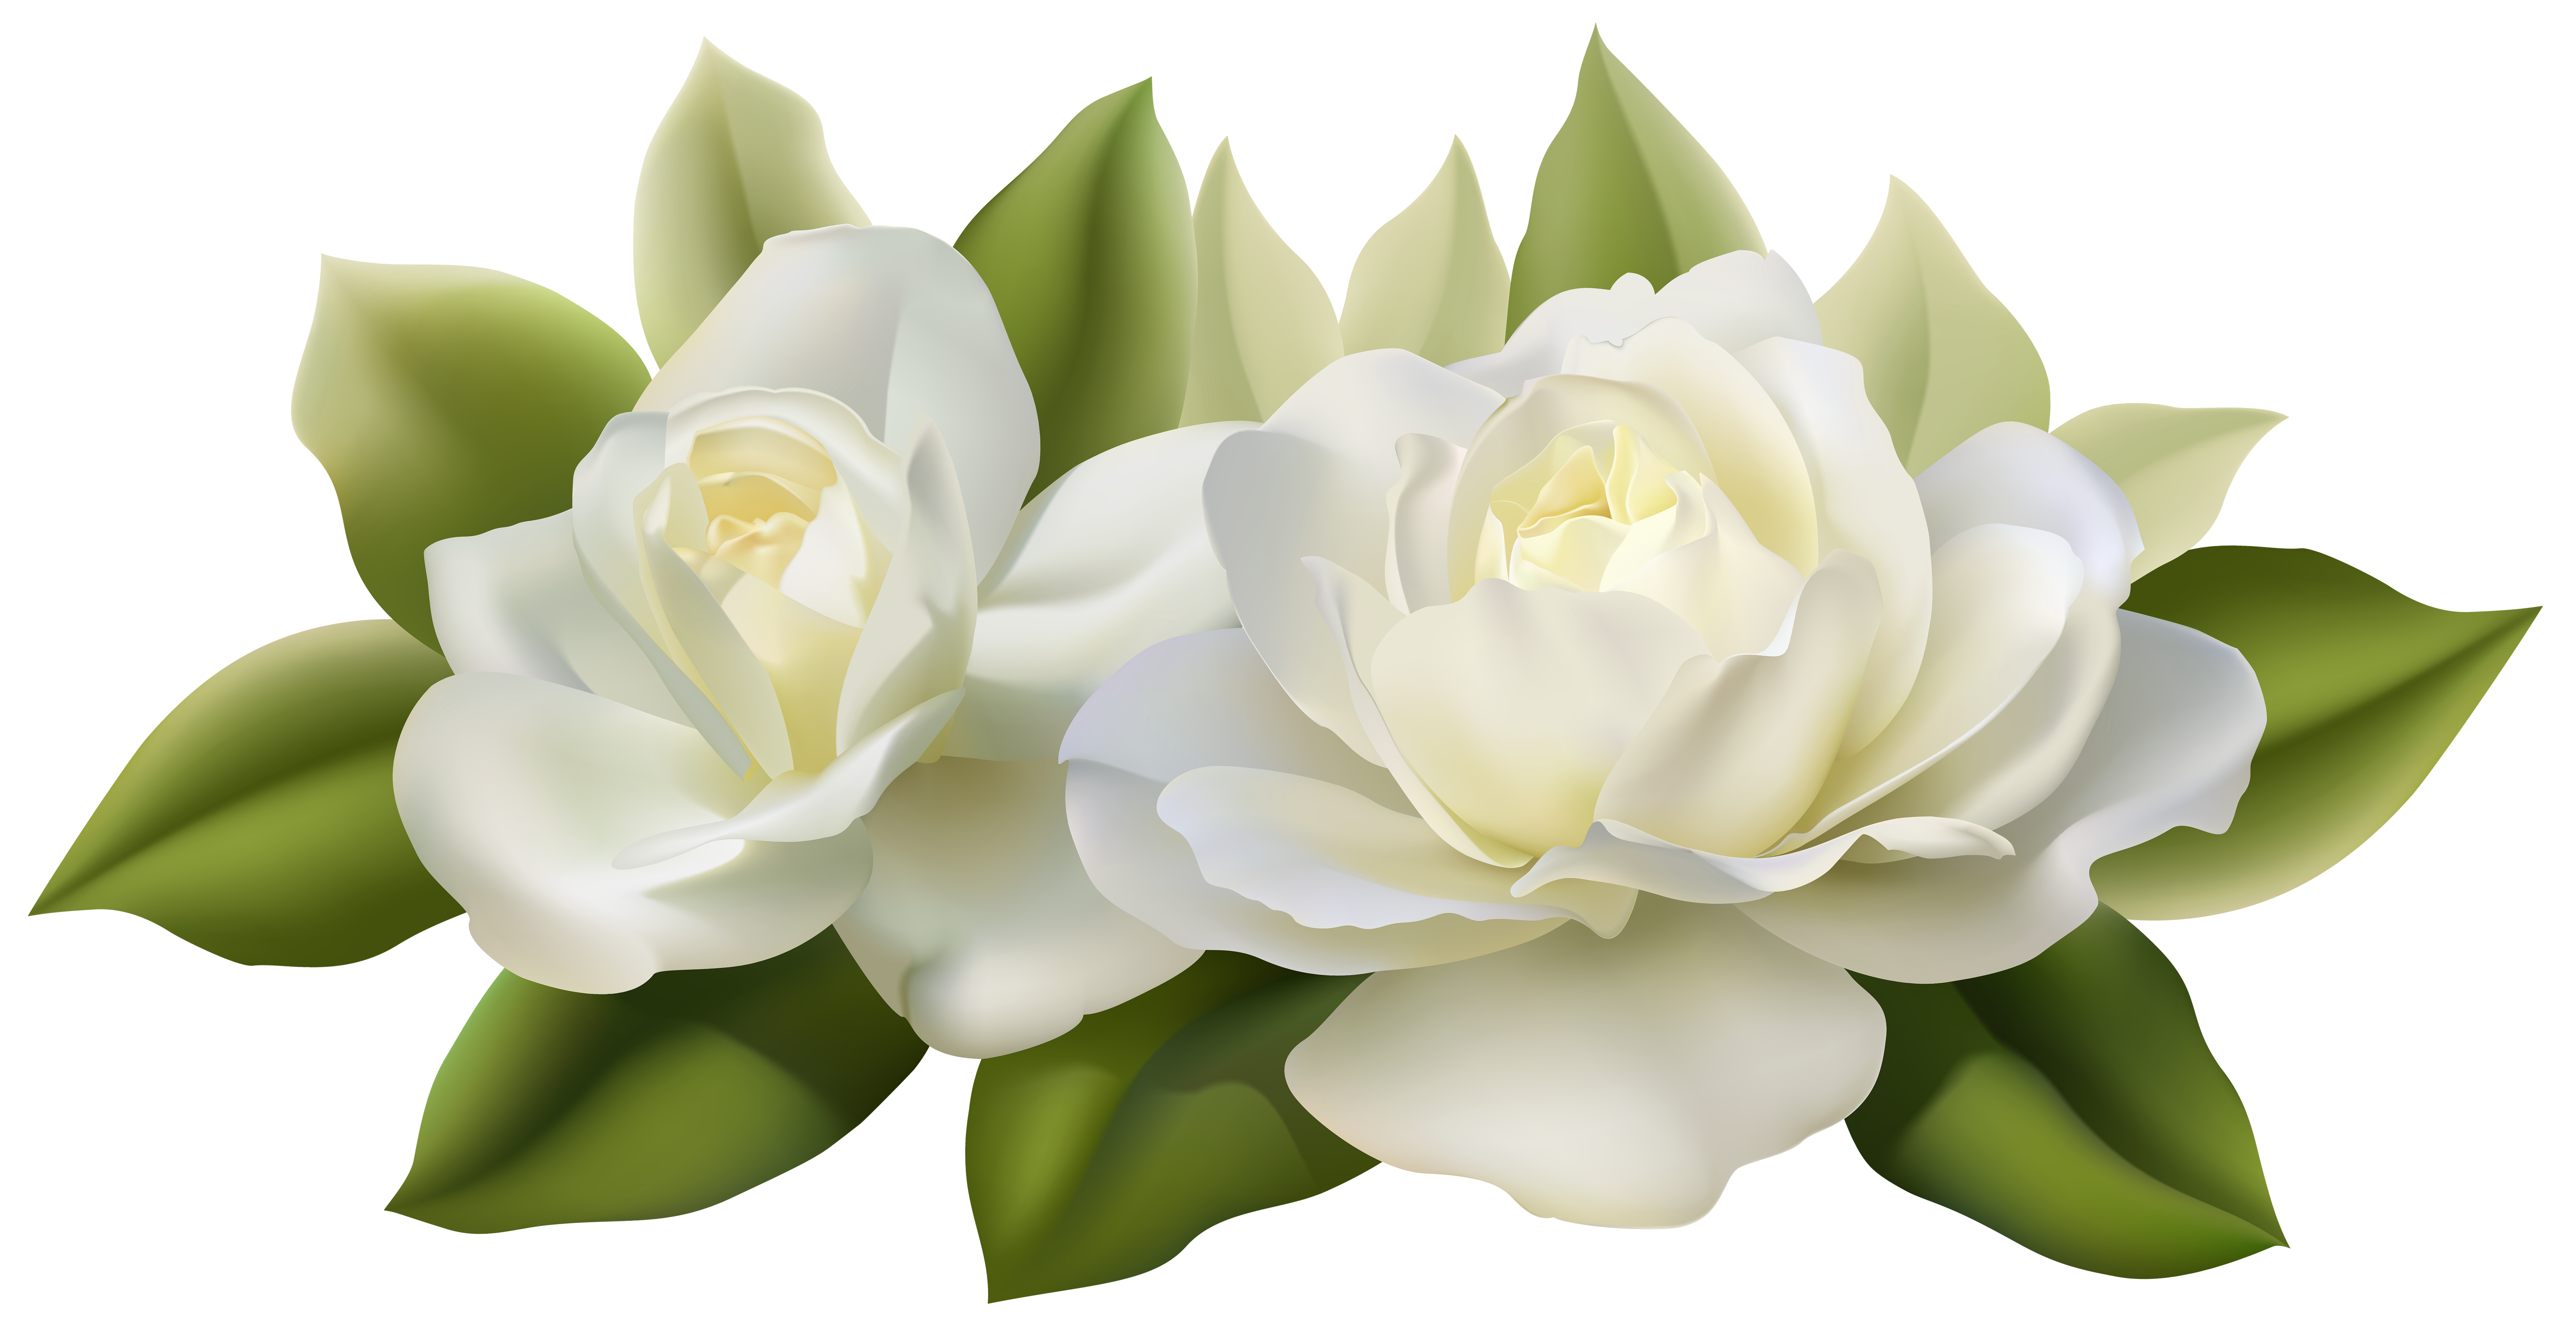 Flower Rose White Clip art.